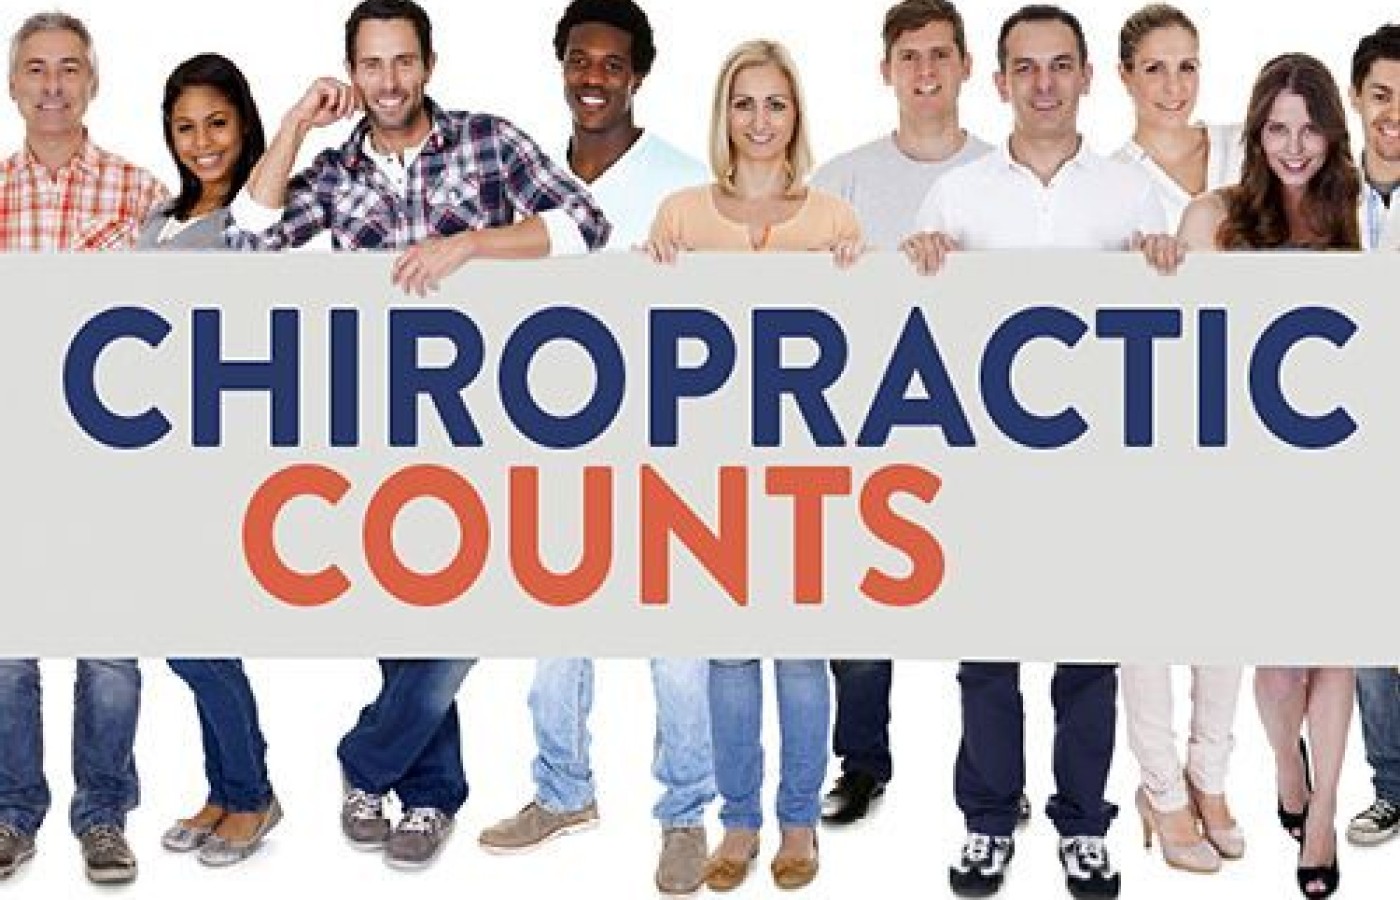 chiropractic counts